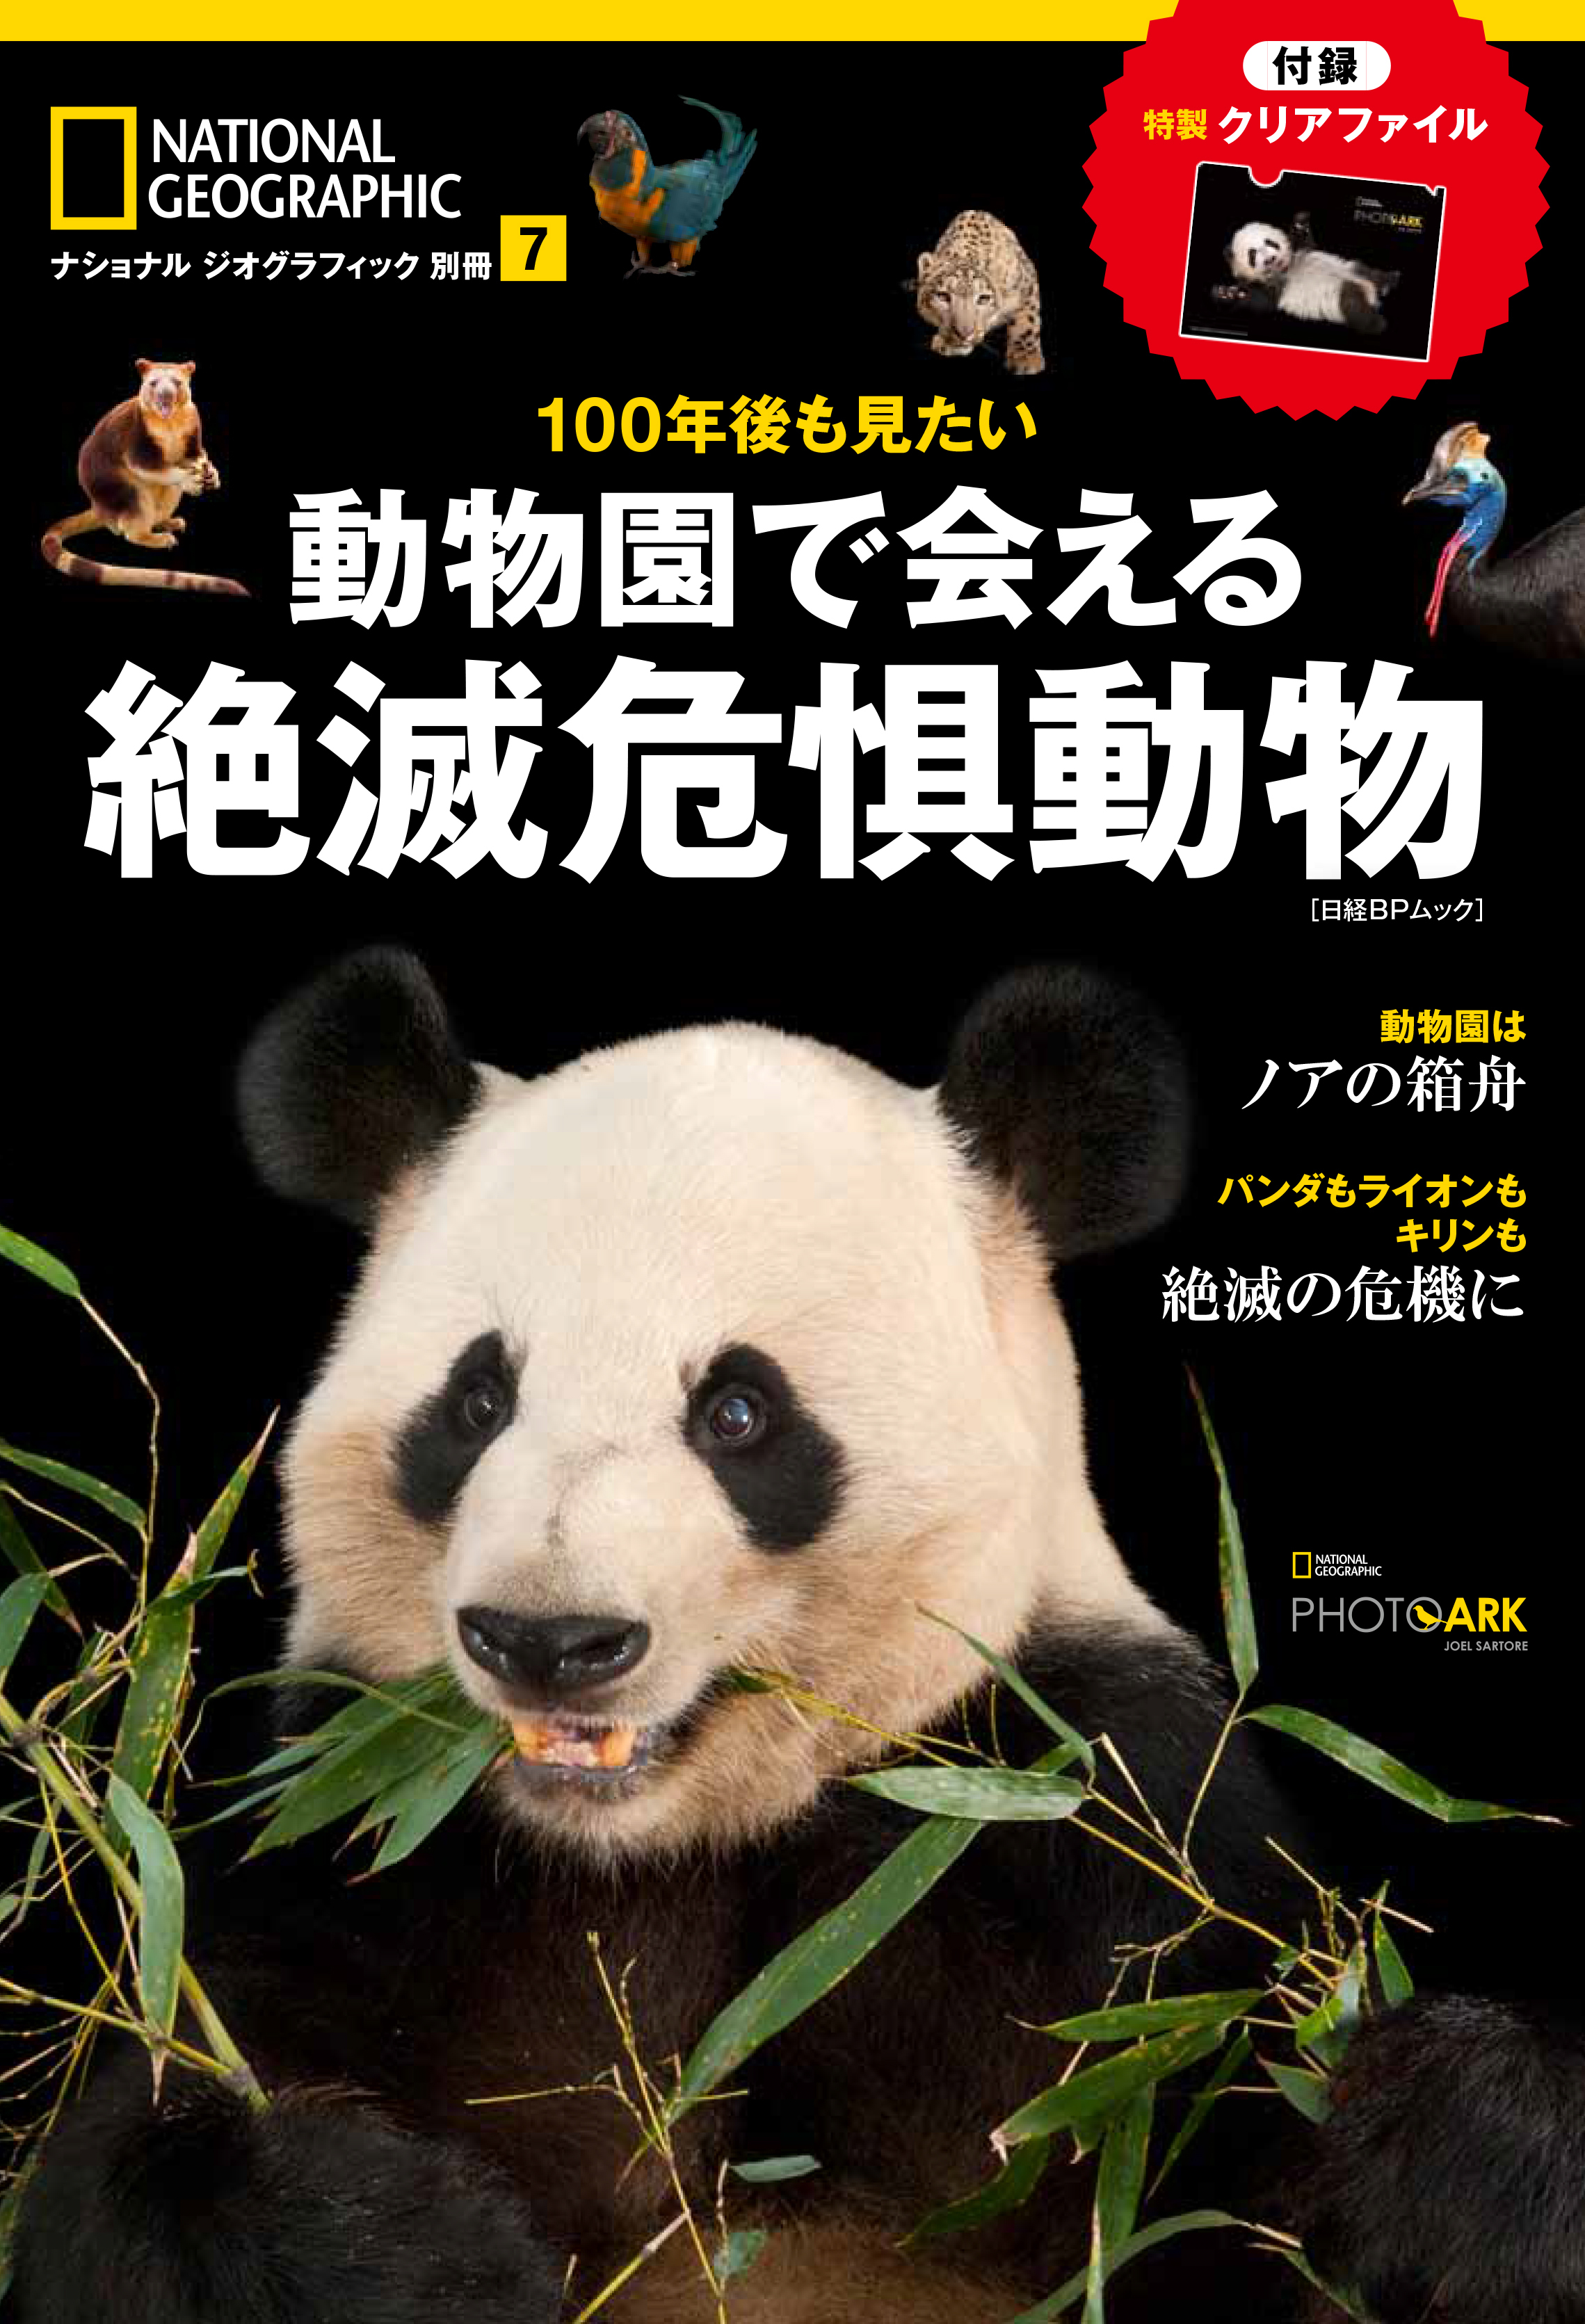 100年後も見たい 動物園で会える絶滅危惧動物 10月16日 月 発売 日経ナショナル ジオグラフィック社のプレスリリース